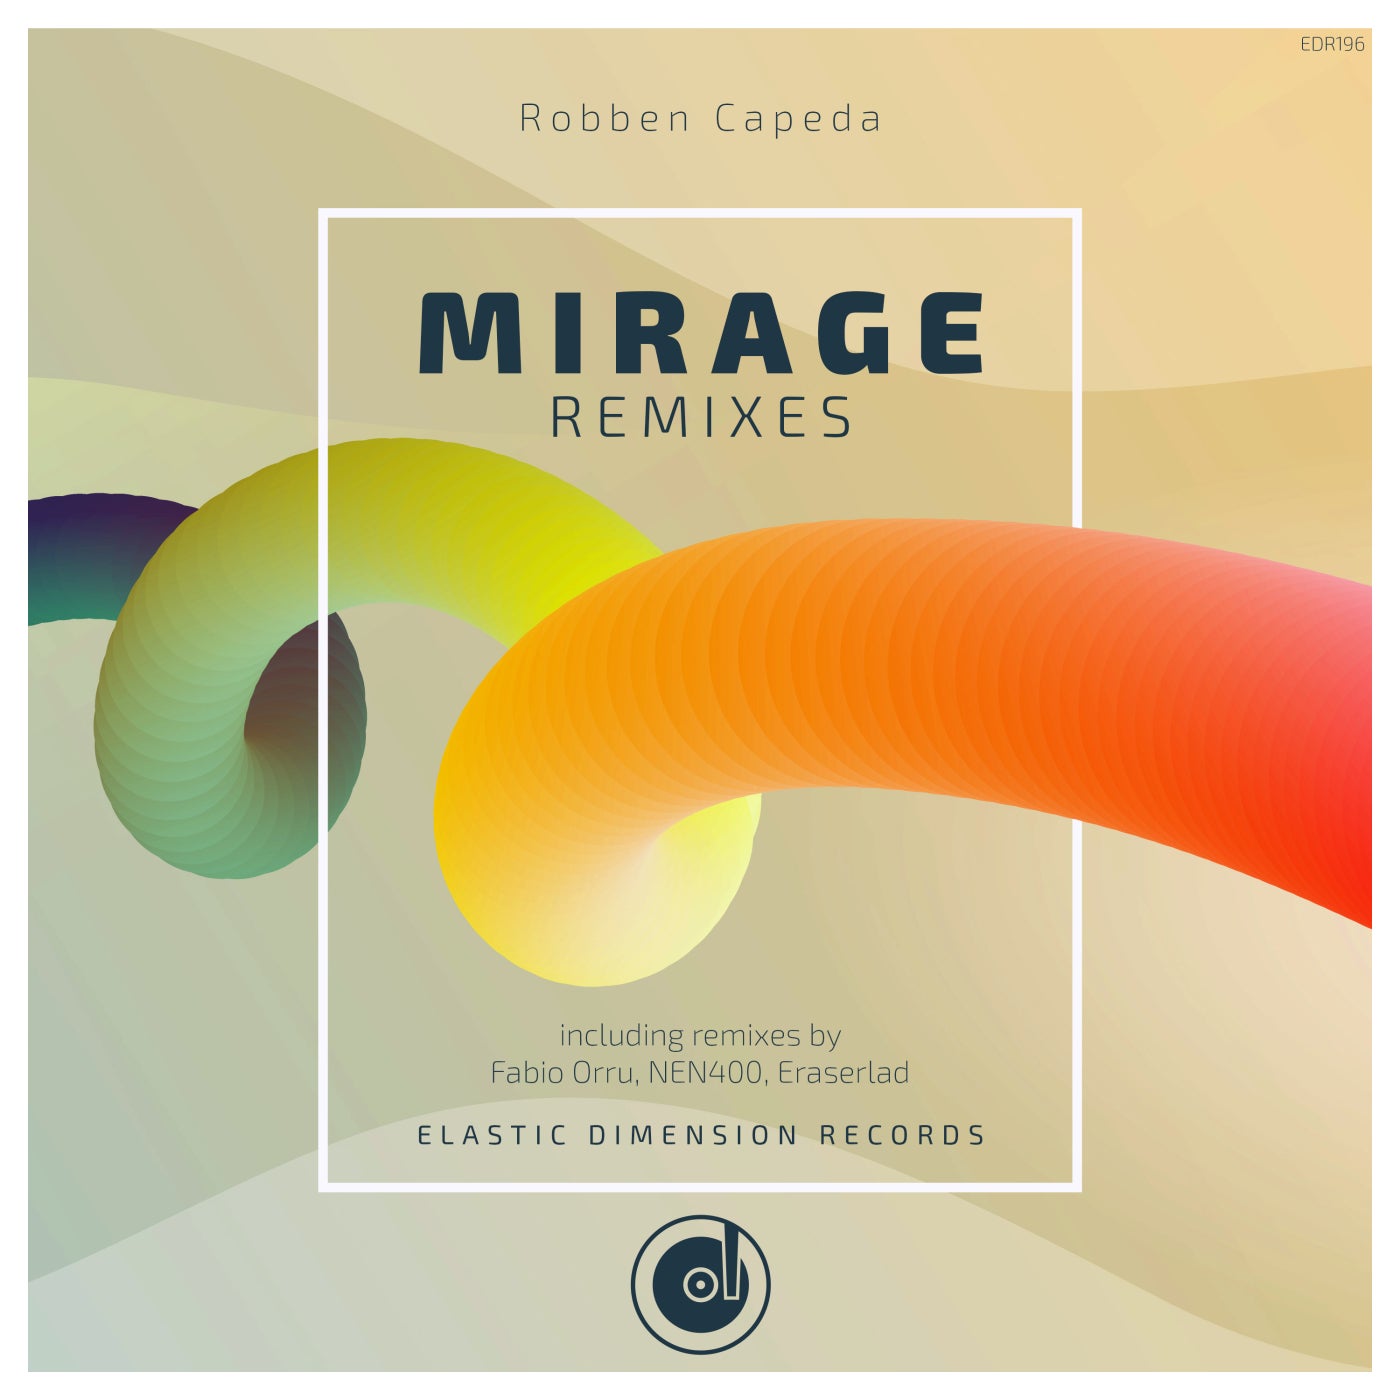 Robben Cepeda - Mirage (Fabio Orru Remix)